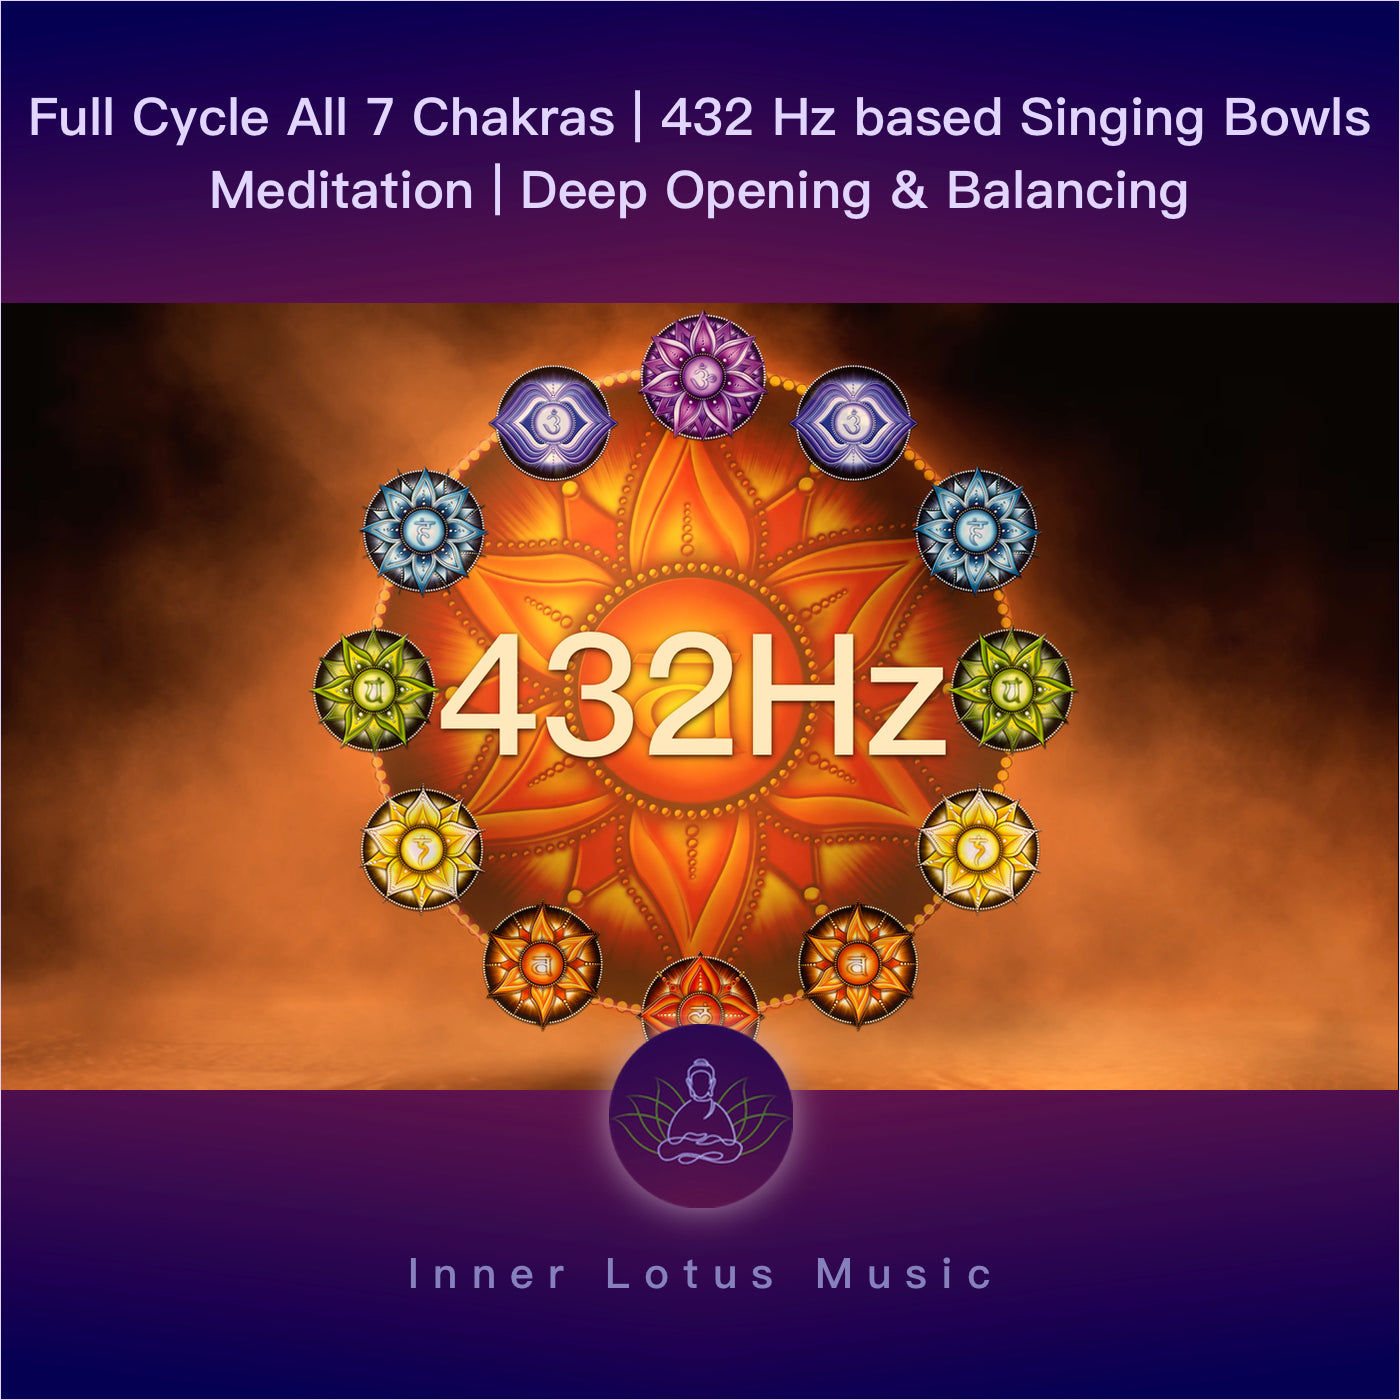 Full Cycle All 7 Chakras | 432 Hz based Singing Bowls Meditation | Deep Opening & Balancing